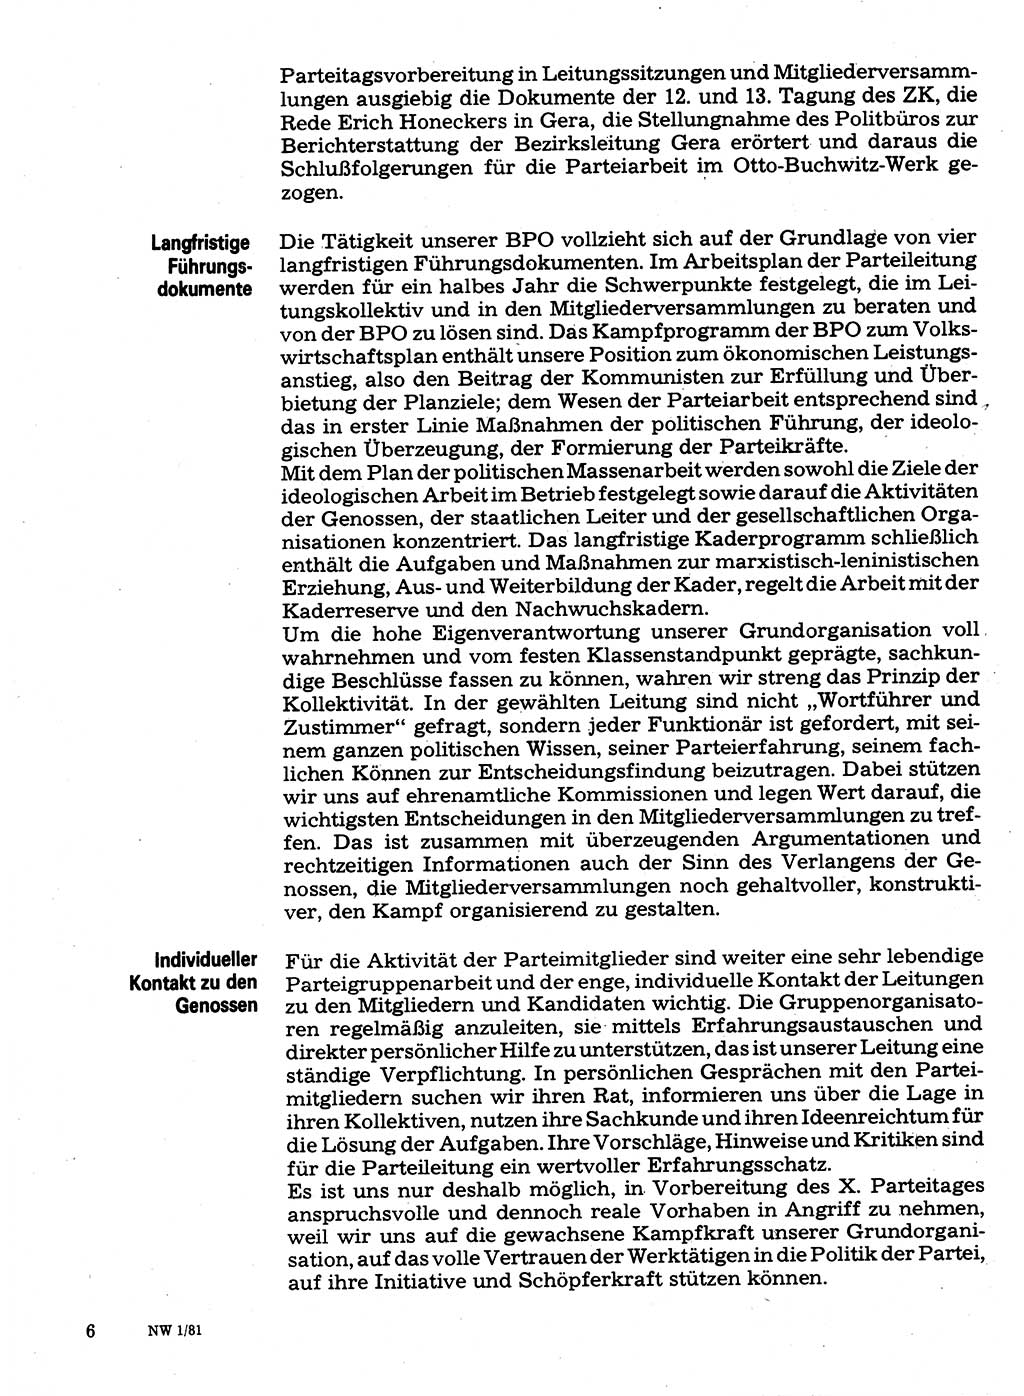 Neuer Weg (NW), Organ des Zentralkomitees (ZK) der SED (Sozialistische Einheitspartei Deutschlands) für Fragen des Parteilebens, 36. Jahrgang [Deutsche Demokratische Republik (DDR)] 1981, Seite 6 (NW ZK SED DDR 1981, S. 6)